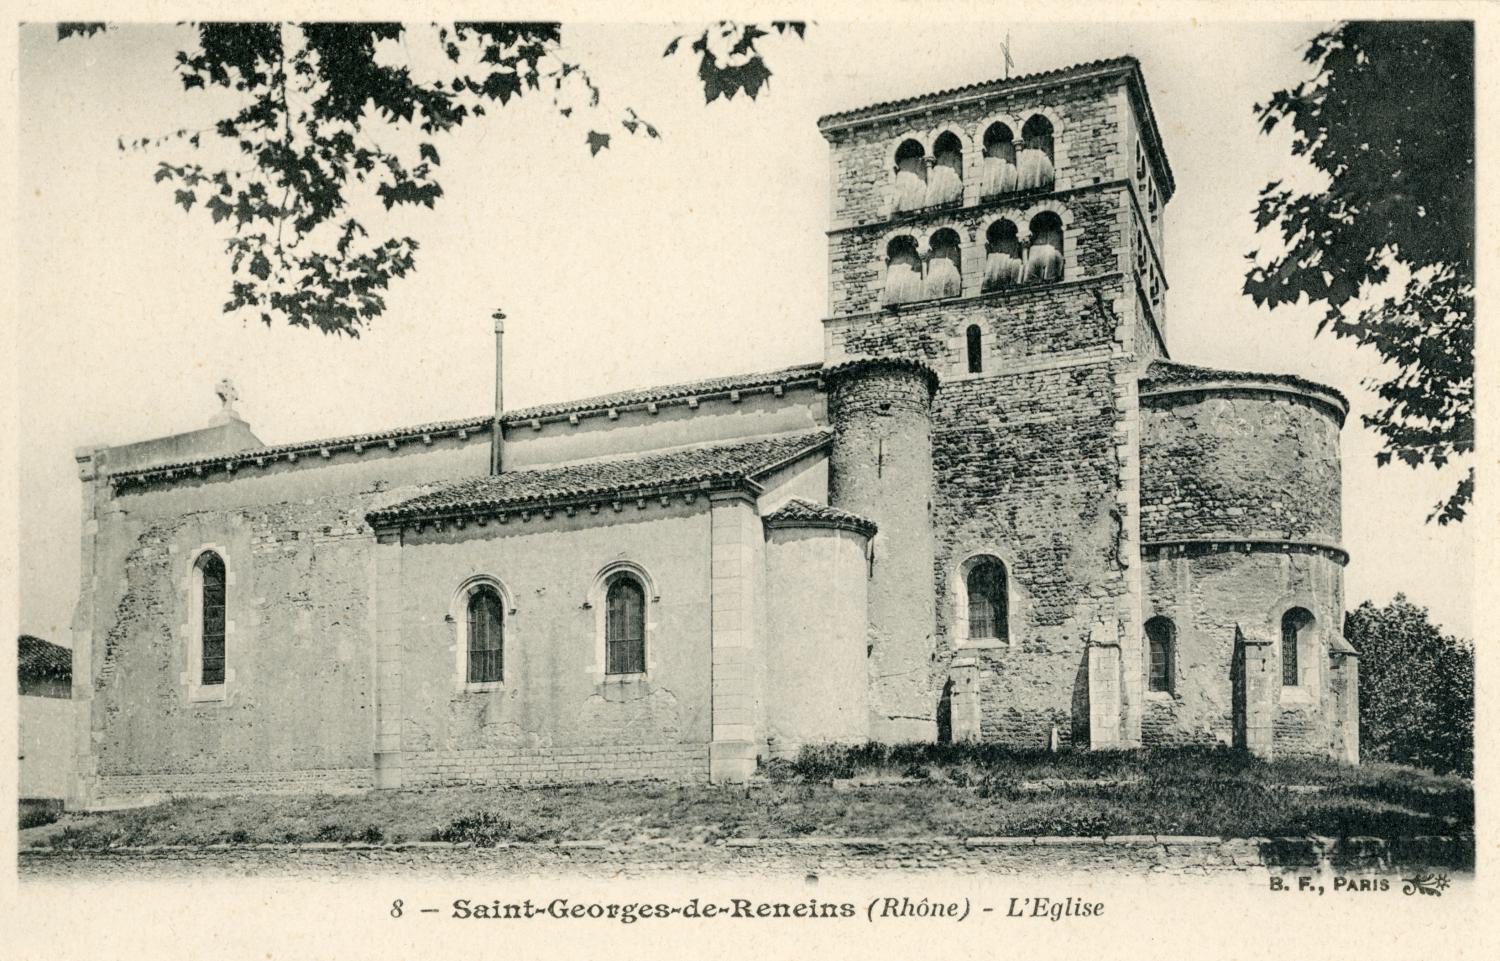 Saint-Georges-de-Reneins (Rhône). - L'Eglise